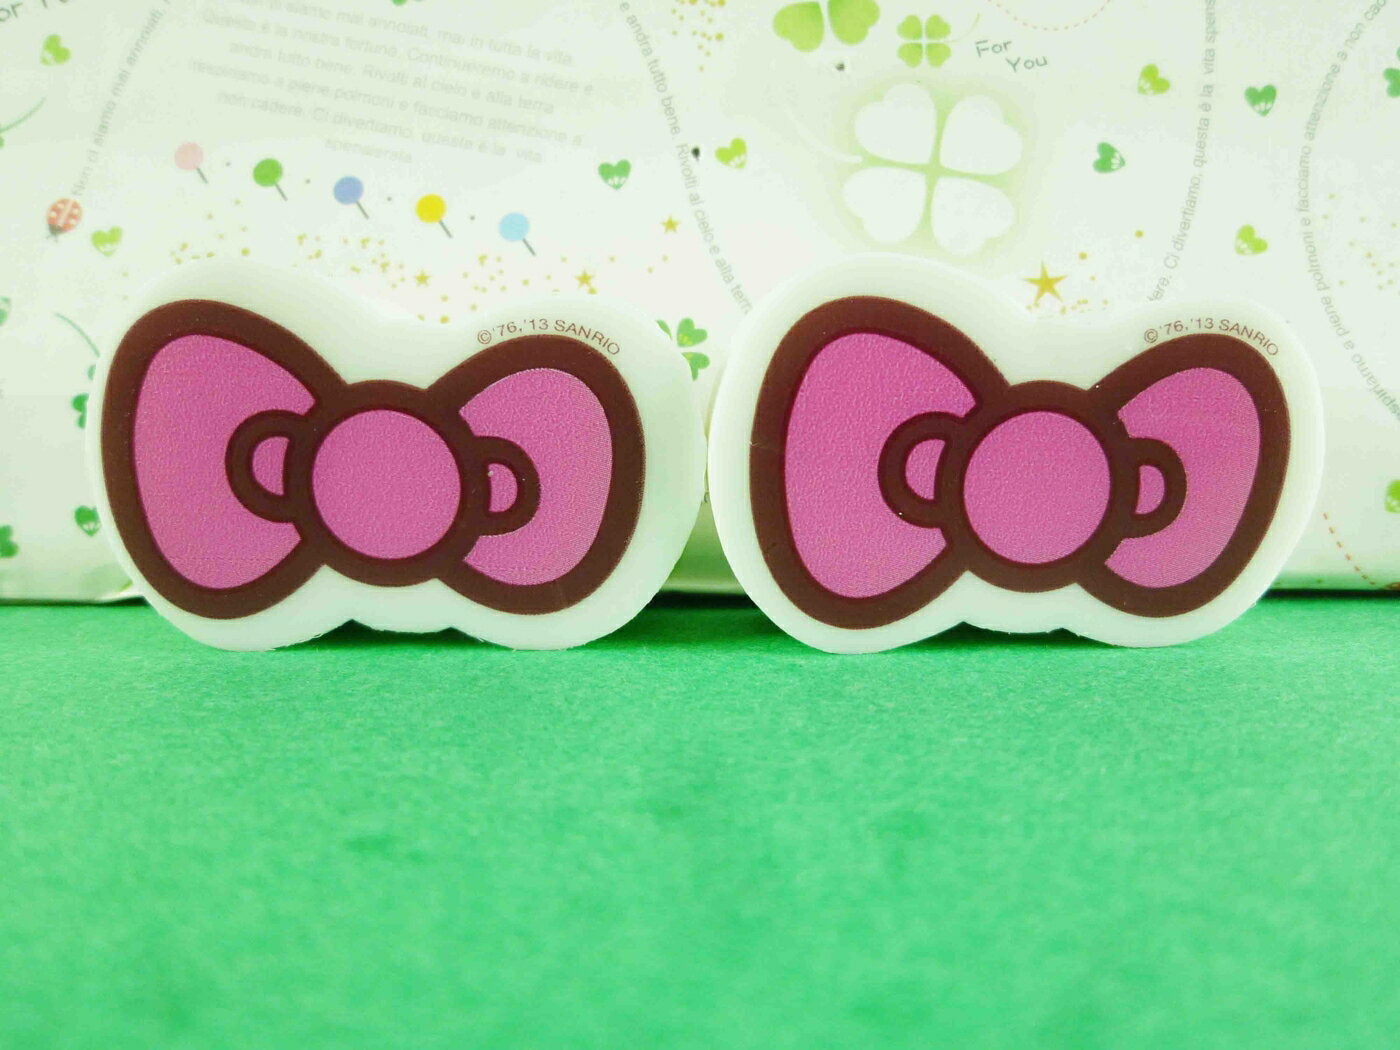 【震撼精品百貨】Hello Kitty 凱蒂貓 橡皮擦組-2入粉蝴蝶結 震撼日式精品百貨